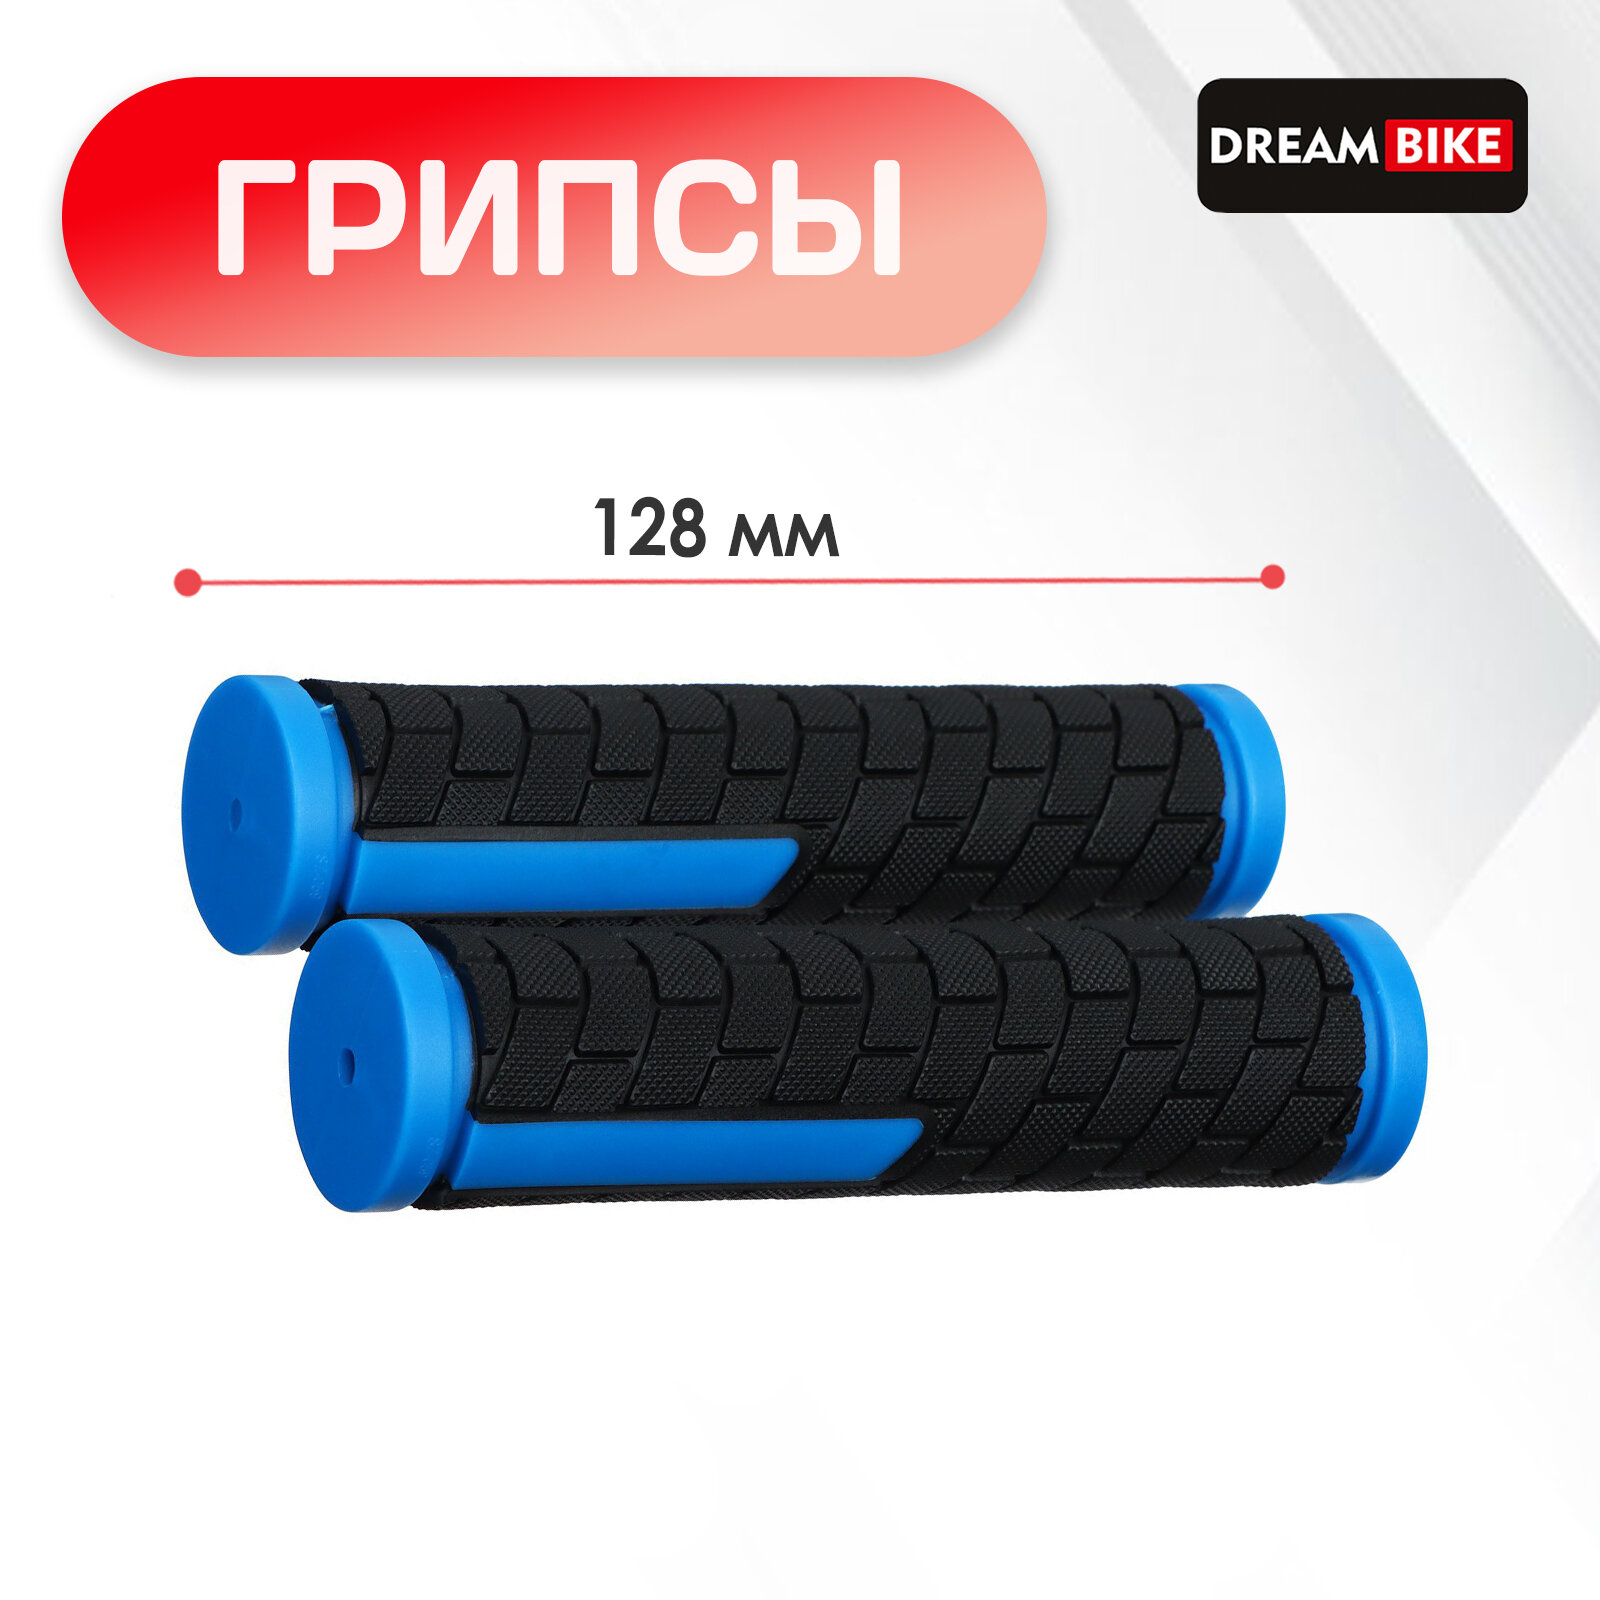 Грипсы 128 мм, Dream Bike, посадочный диаметр 22,2 мм, цвет чёрный, синий